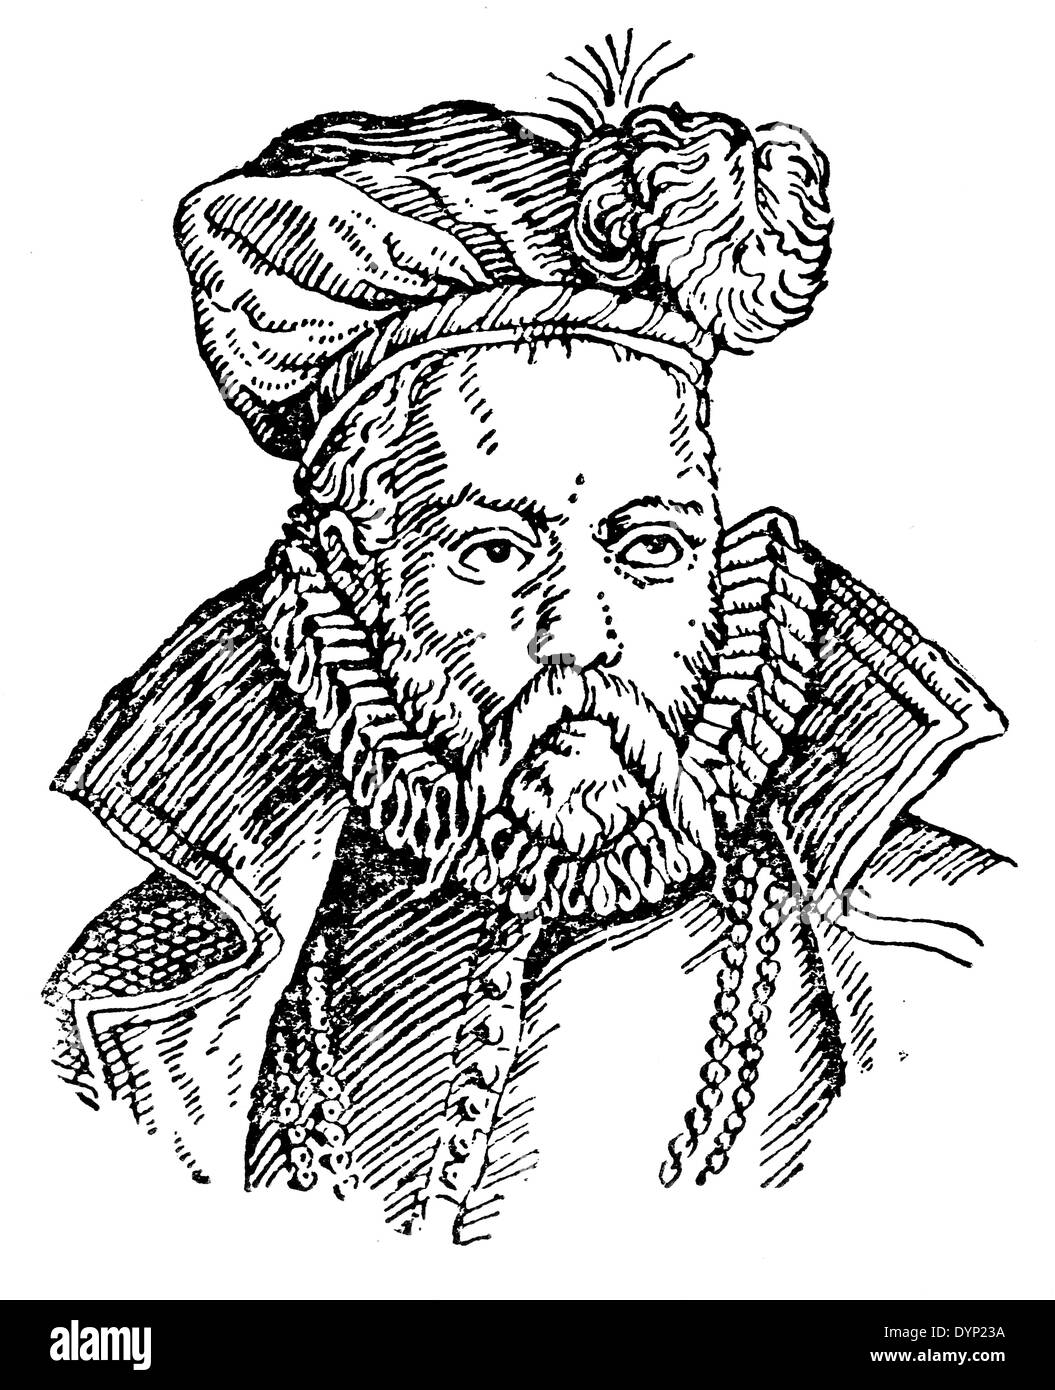 Tycho Brahe (1546-1601), noble danois, astronome, astrologue et alchimiste, illustration de l'Encyclopédie Soviétique, 1927 Banque D'Images